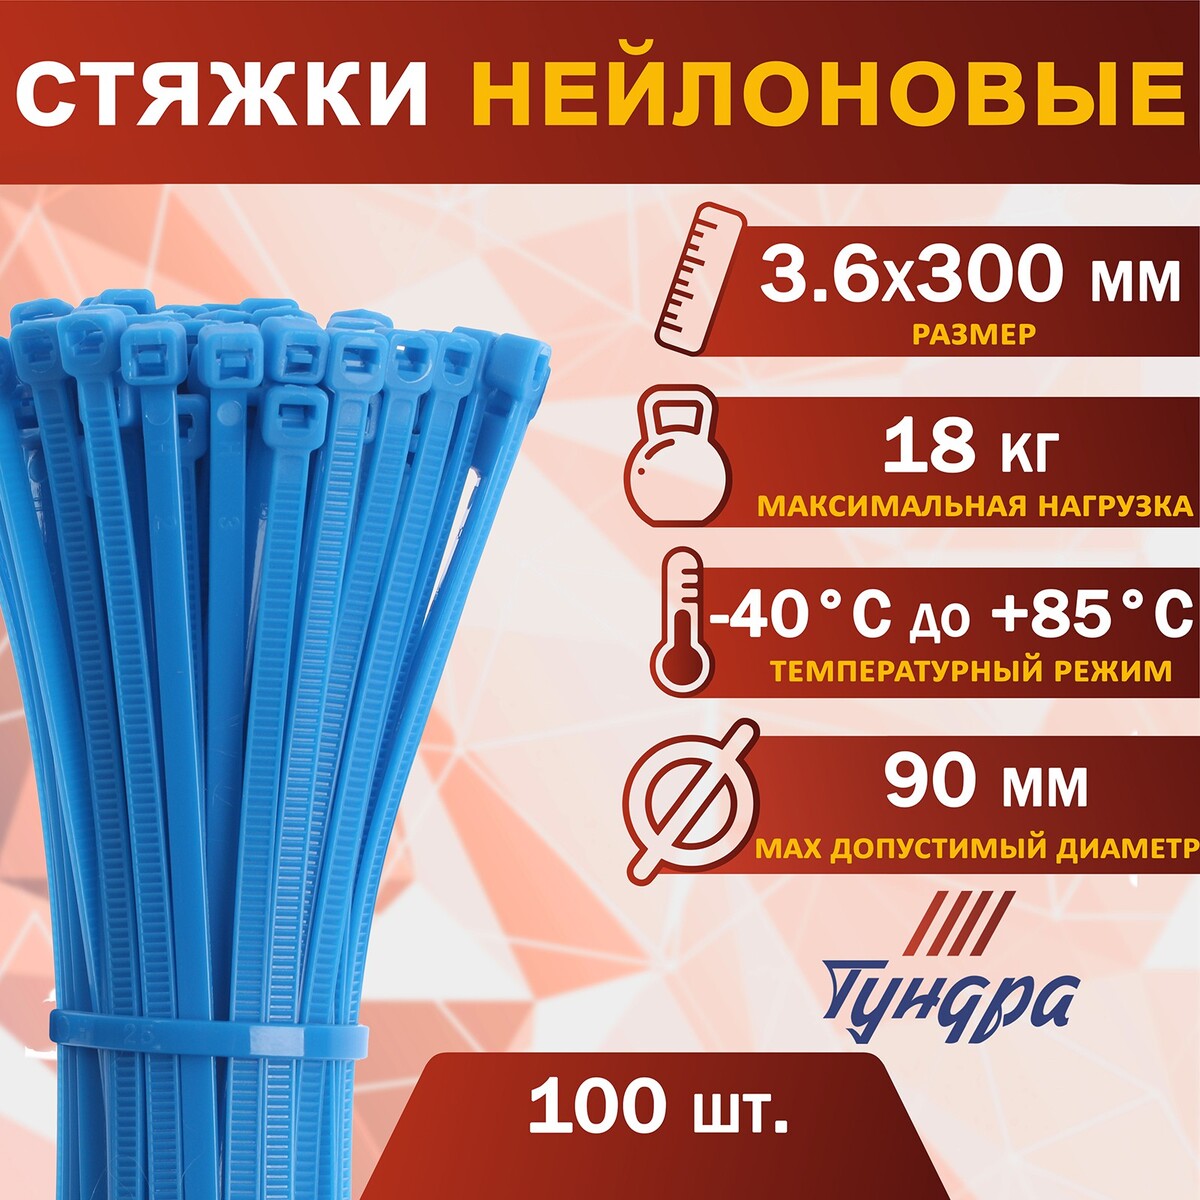 Хомут нейлоновый пластик тундра krep, для стяжки, 3.6х300 мм, цвет синий, в уп. 100 шт хомут нейлоновый пластик 3 6х300 мм белые в упаковке 100 шт